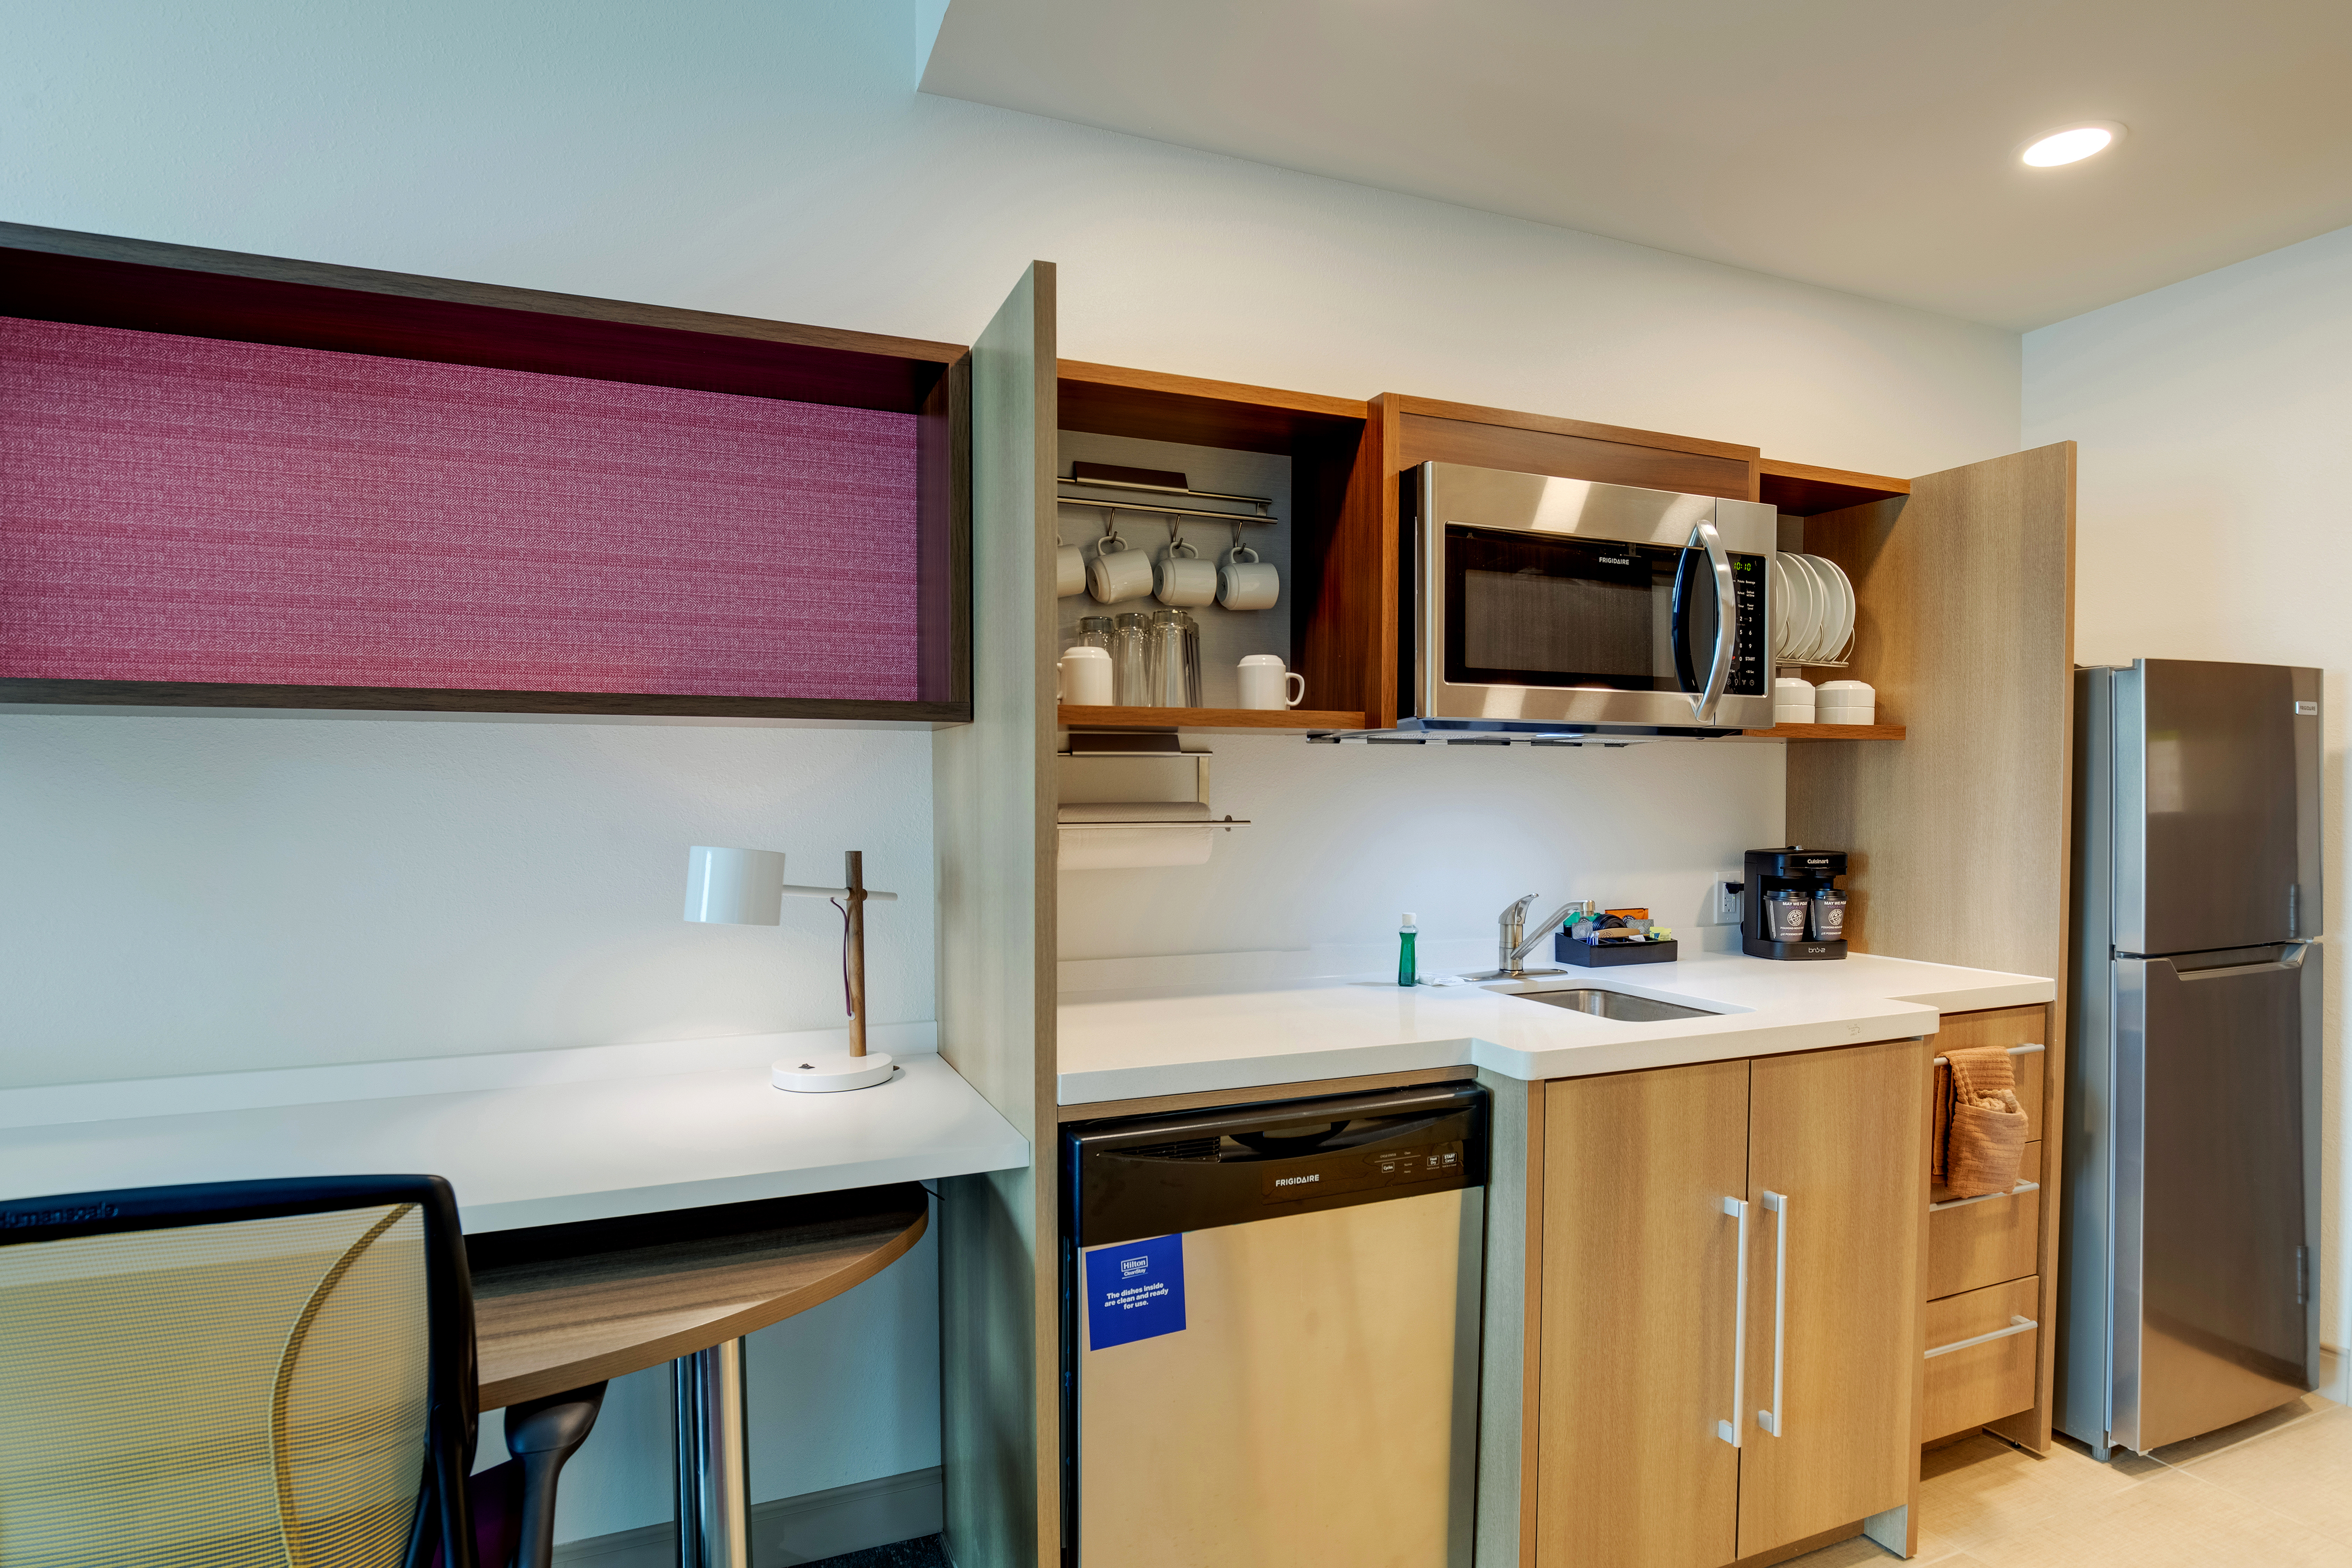 guest suite kitchen, microwave, dishwasher, refrigerator